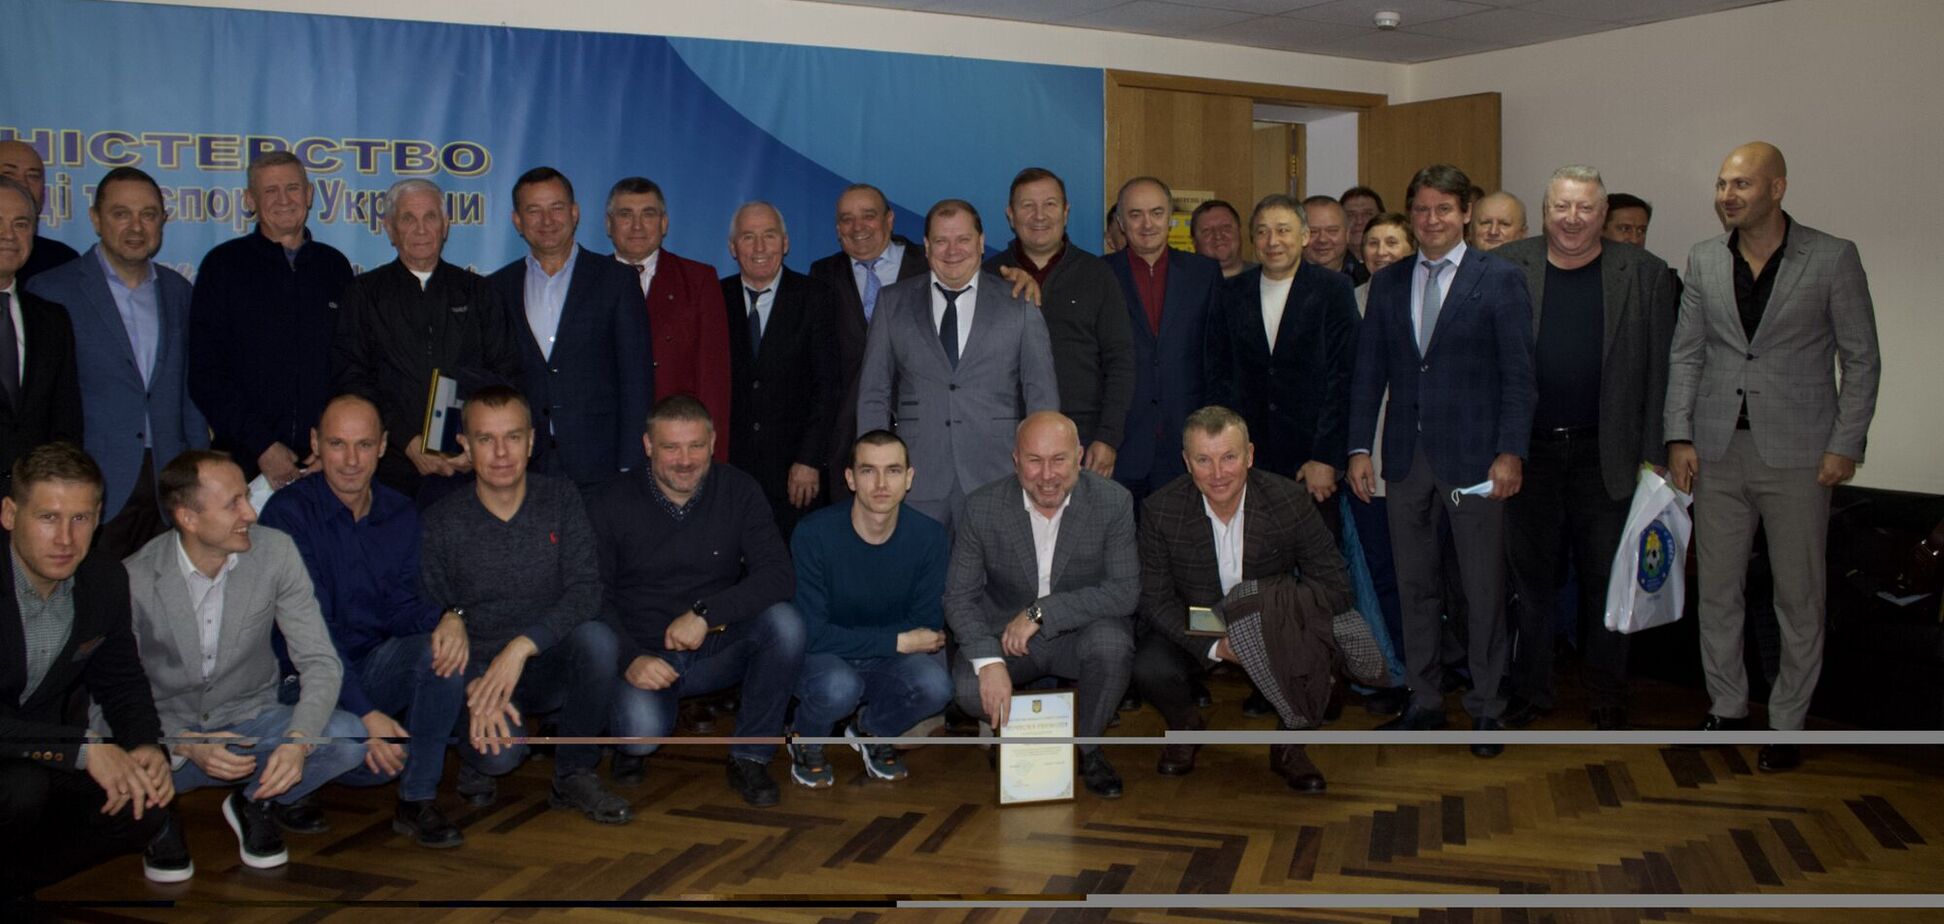 110-летие киевского футбола: прошло вручение почетных наград